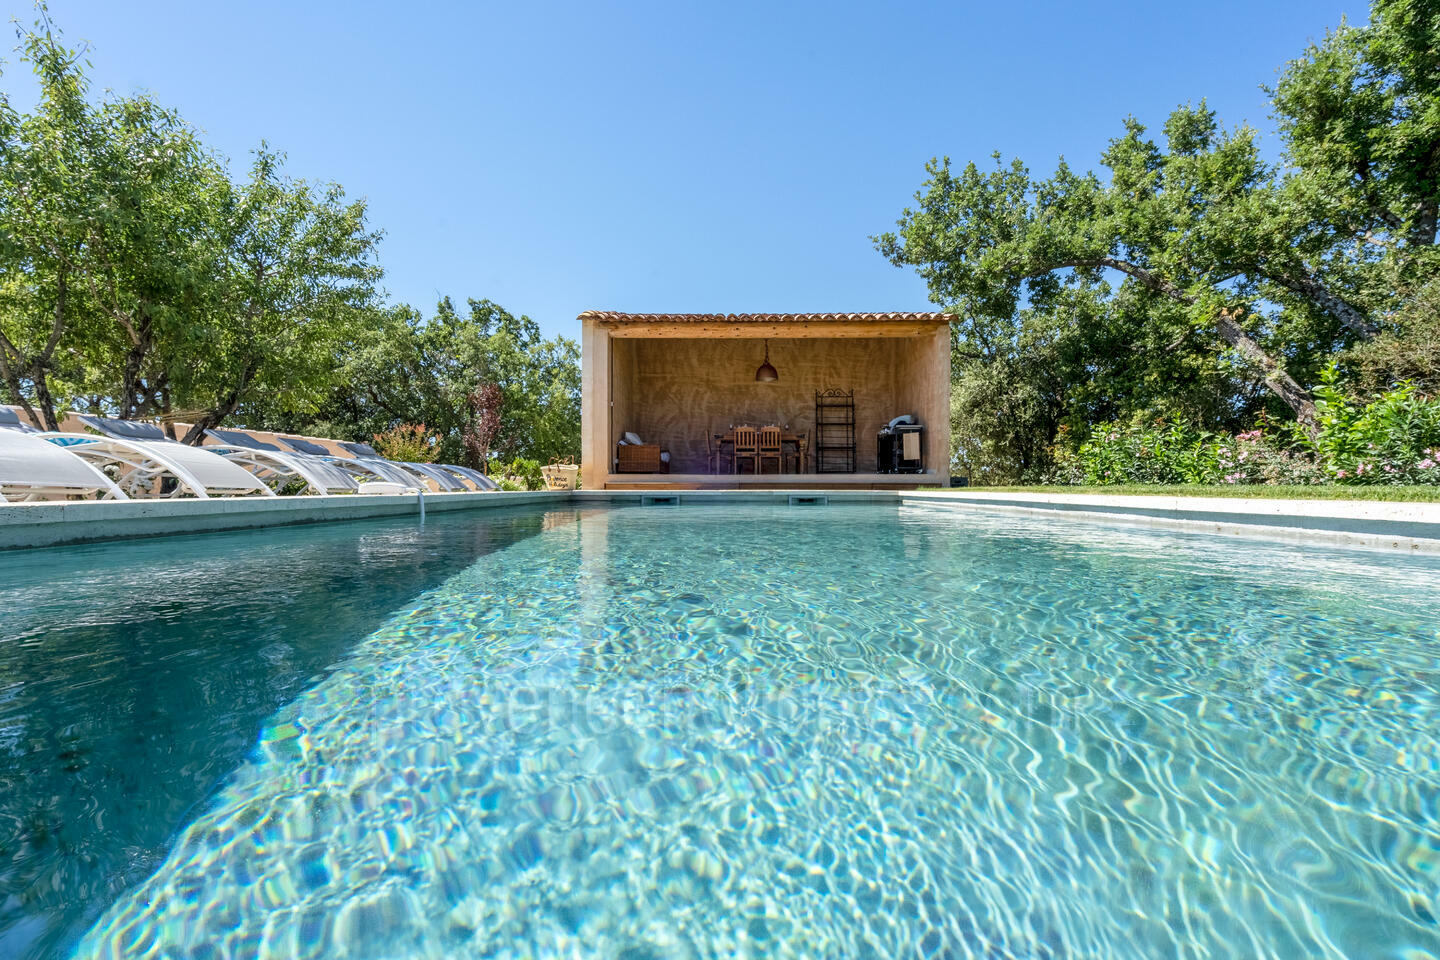 Location de vacances acceptant les animaux avec piscine chauffée près de Murs 1 - Mas Bérigoule: Villa: Pool